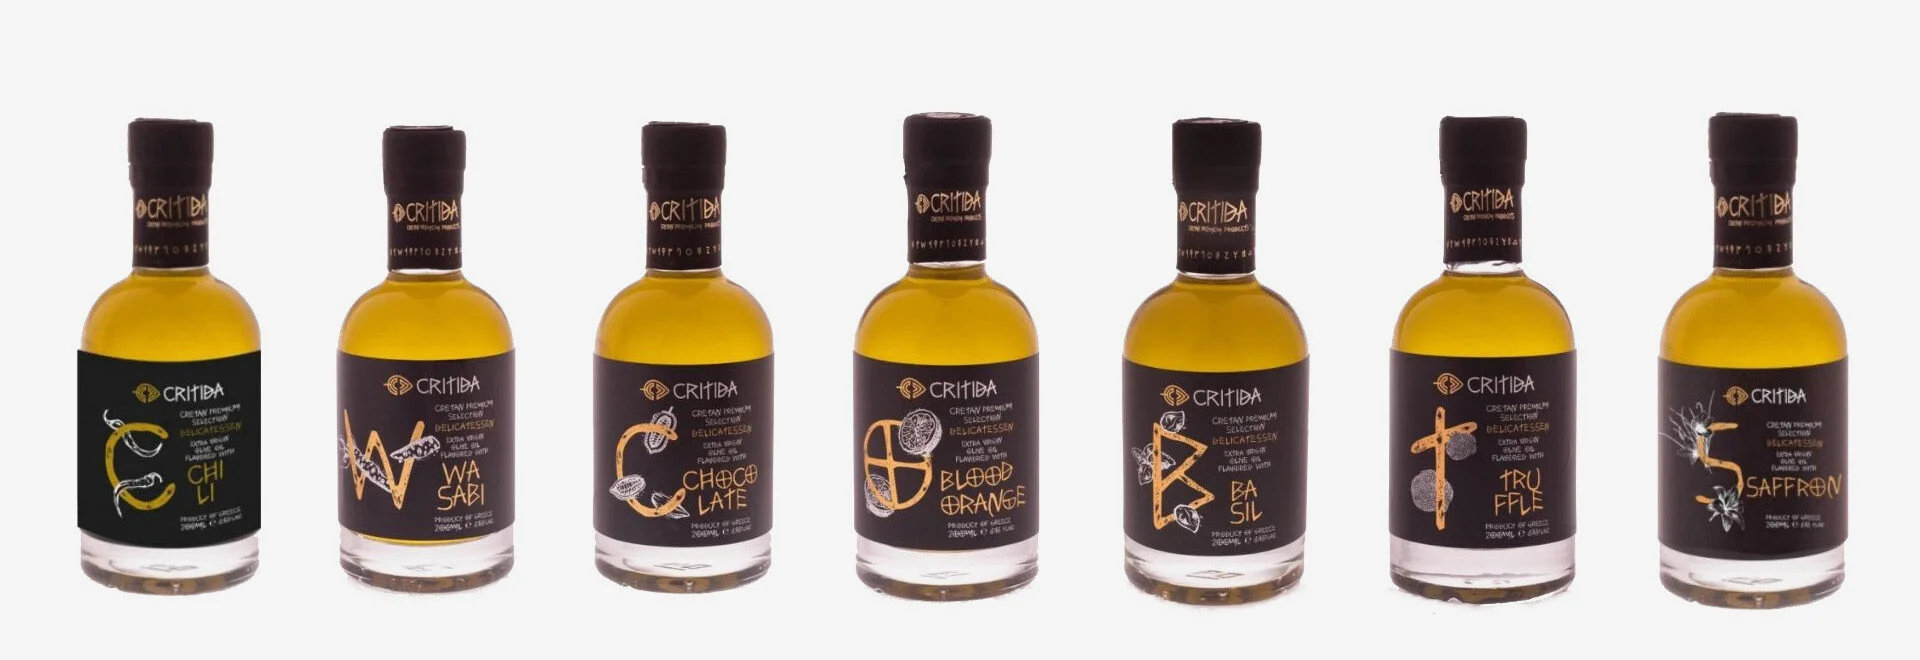 Nos produits premium aromatisés à l'huile d'olive extra vierge (EVOO) de l'île de Crète Grèce